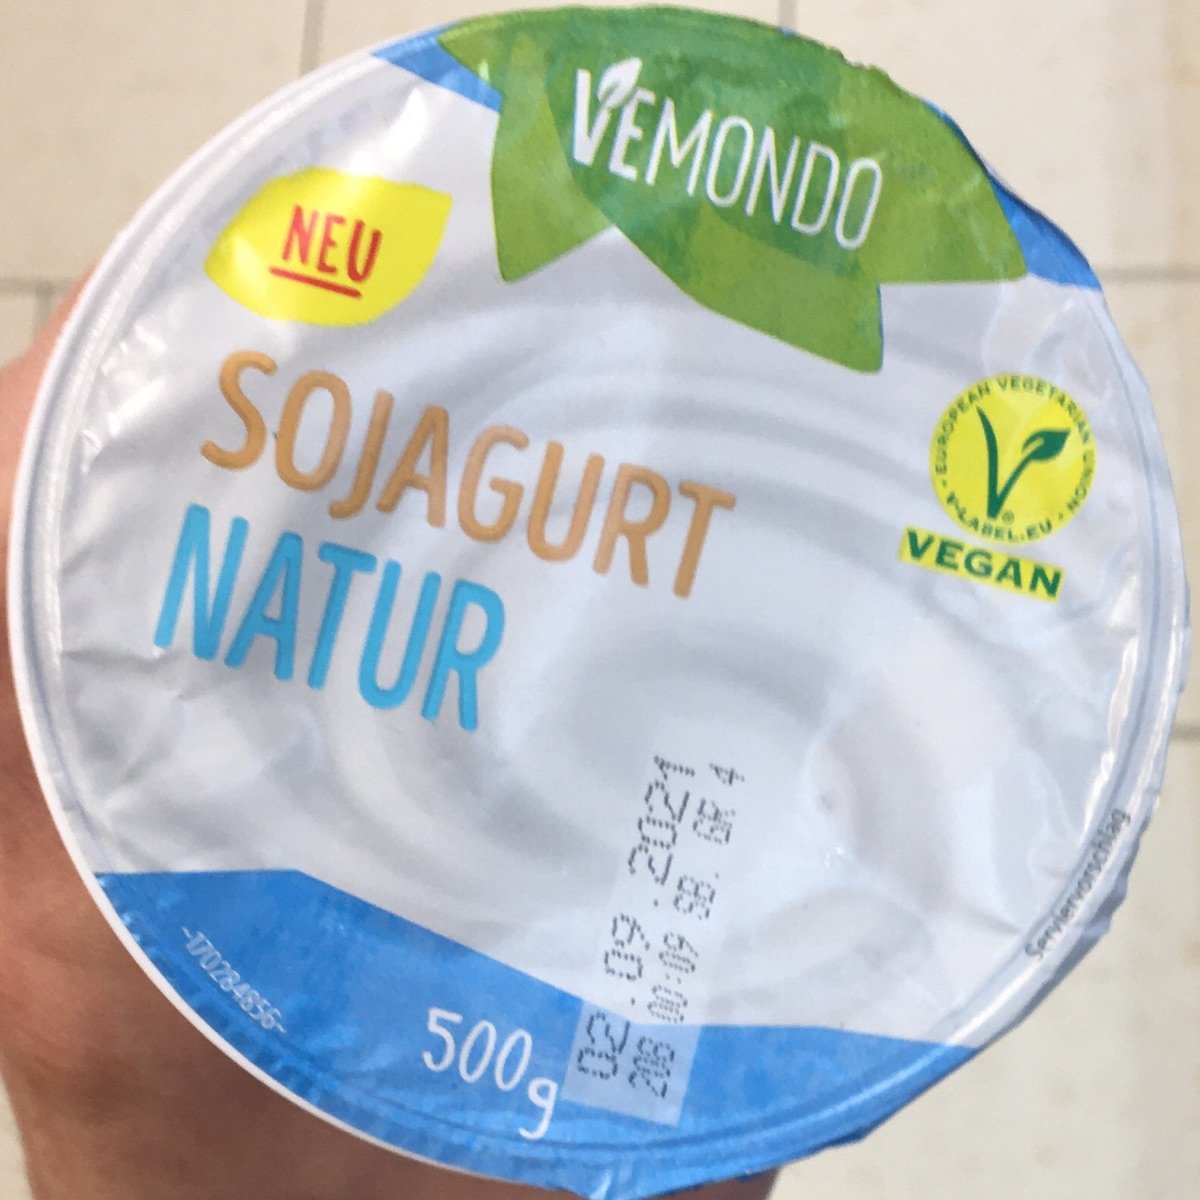 Vemondo Sojagurt Natur Review | abillion | Billiger Donnerstag